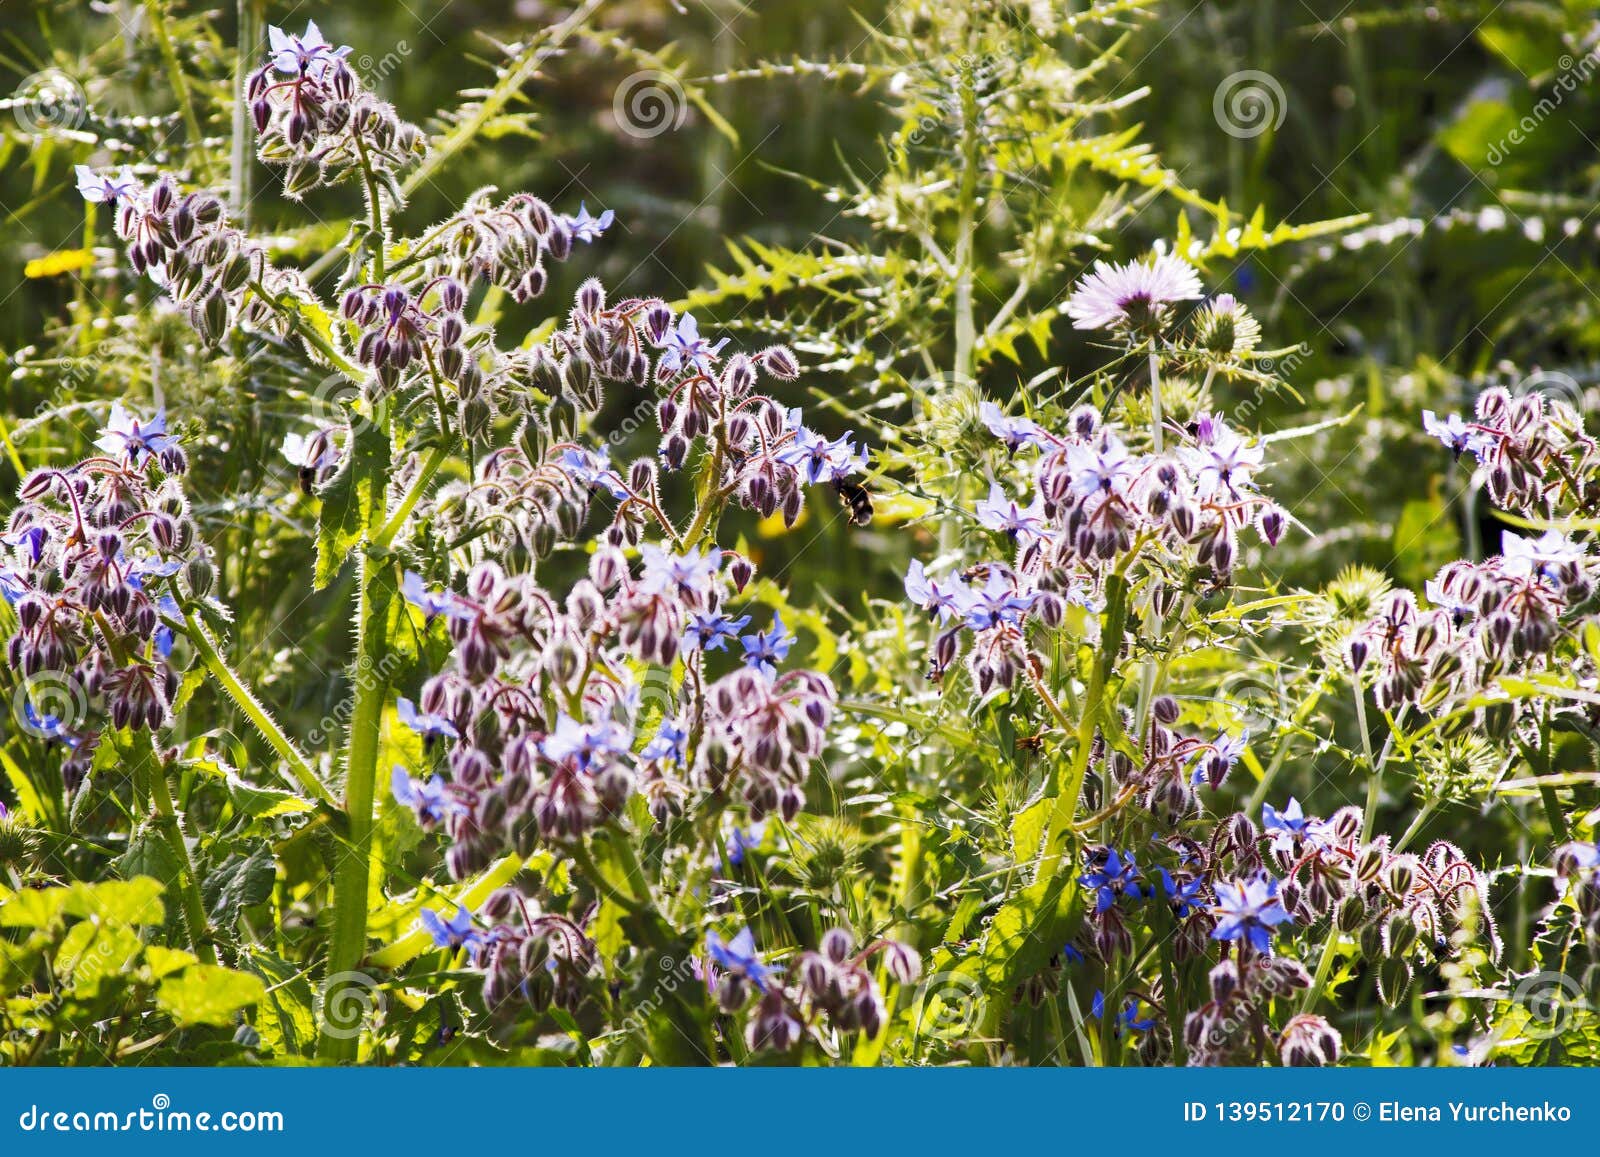 Borago Officinalis in Sunlight Stock Photo - Image of borragine ...